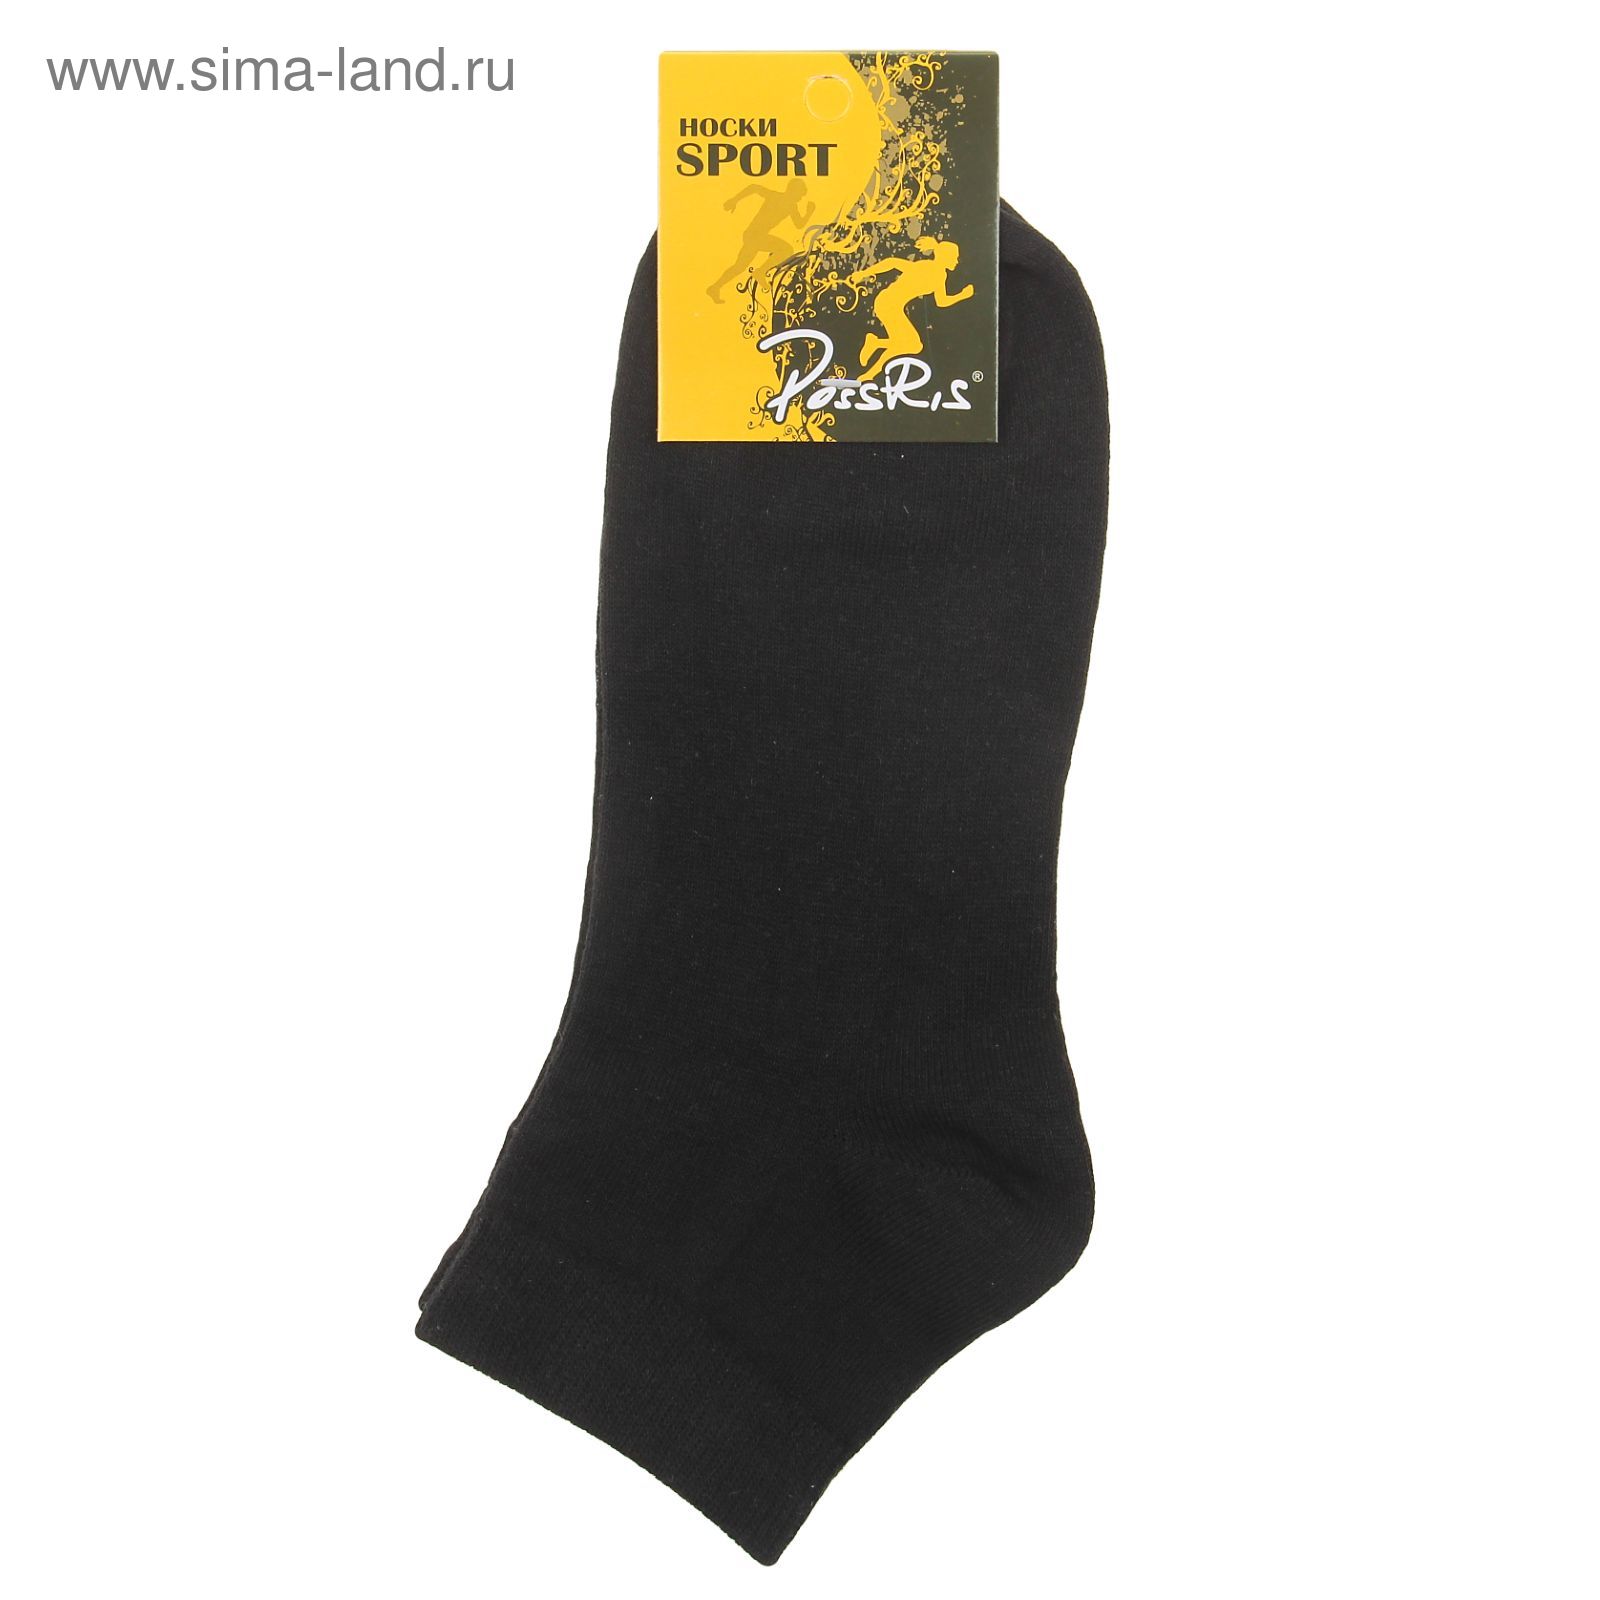 Носки женские спортивные M-436, цвет черный, размер 23-25